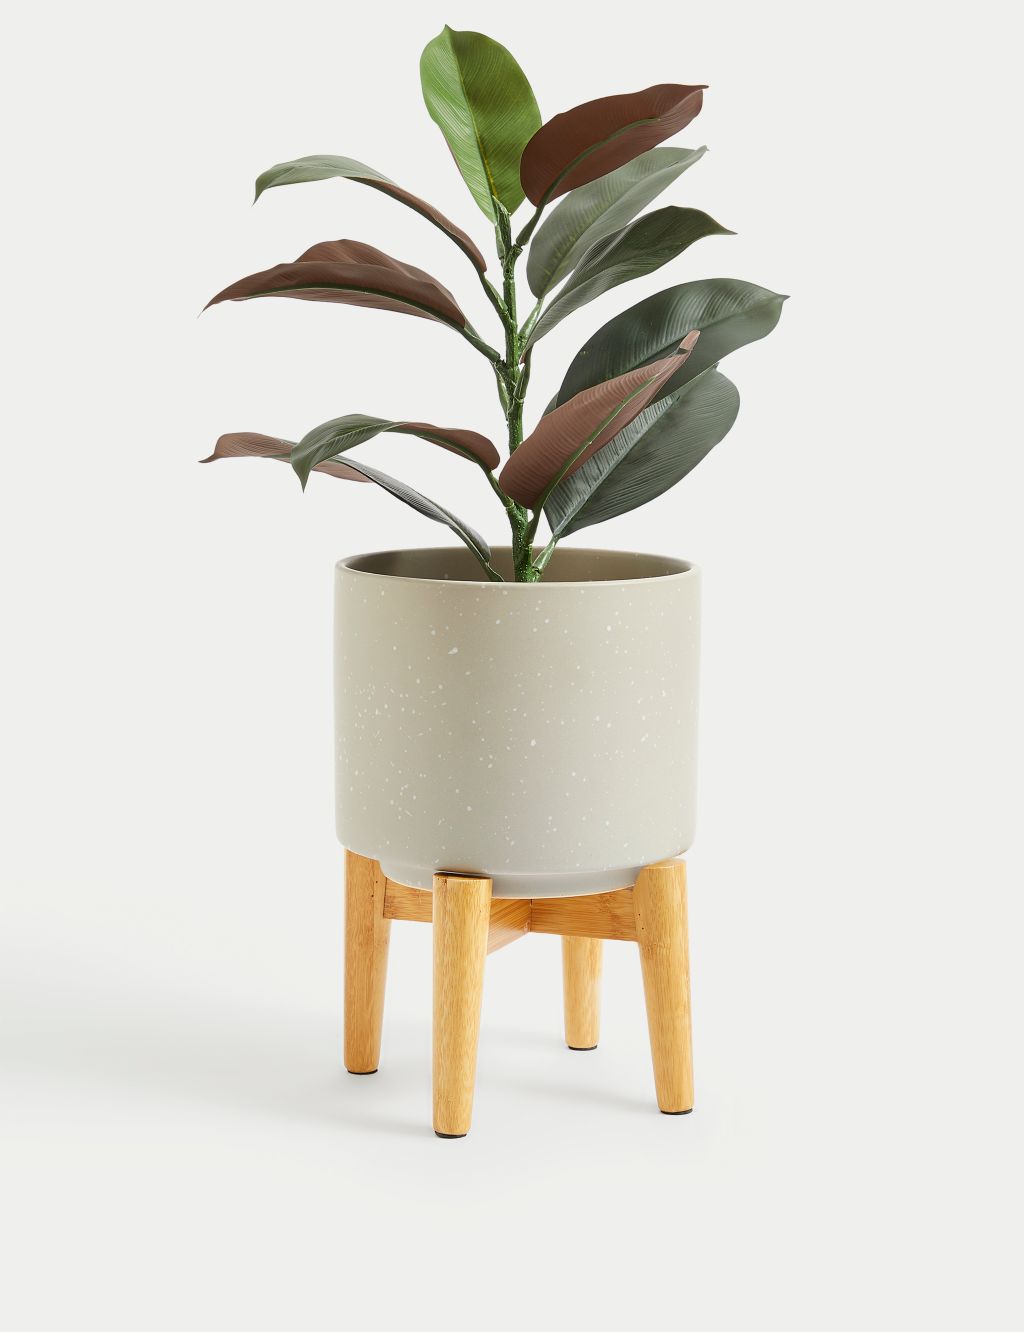 Medium Ceramic Planter with Stand image 2